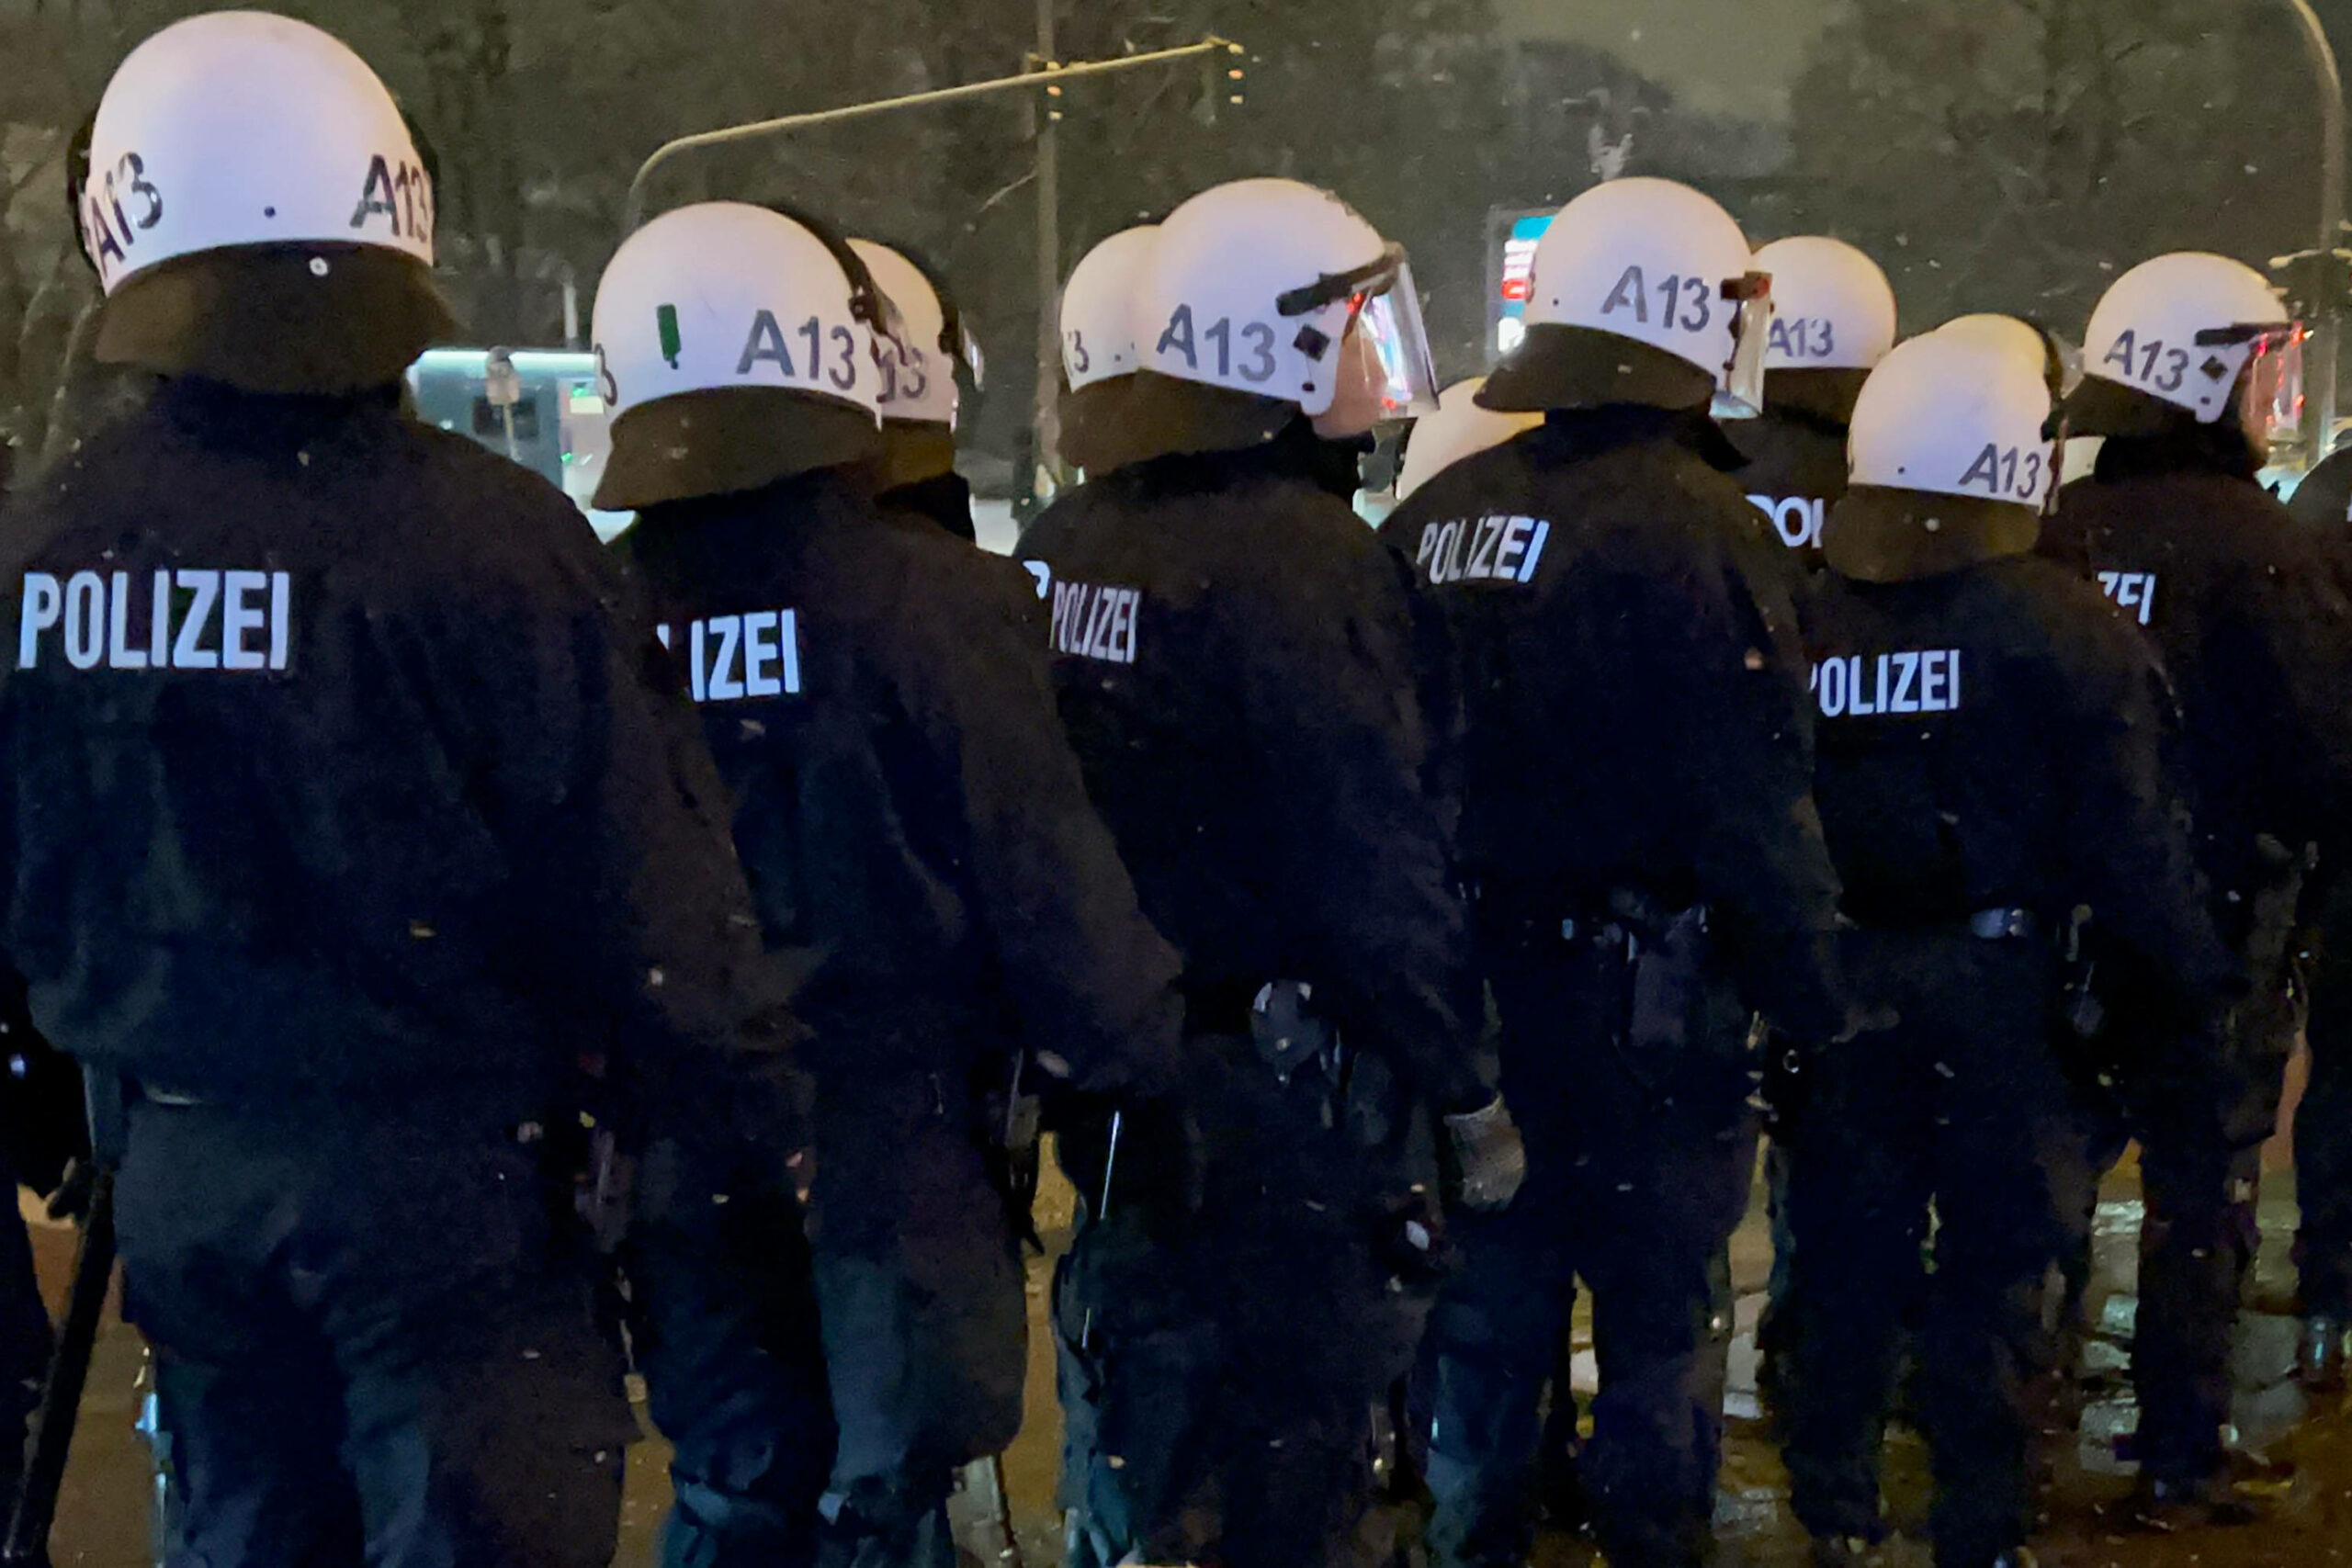 Polizisten im Einsatz stehen auf einer Straße in Hamburg. (Symbolbild)